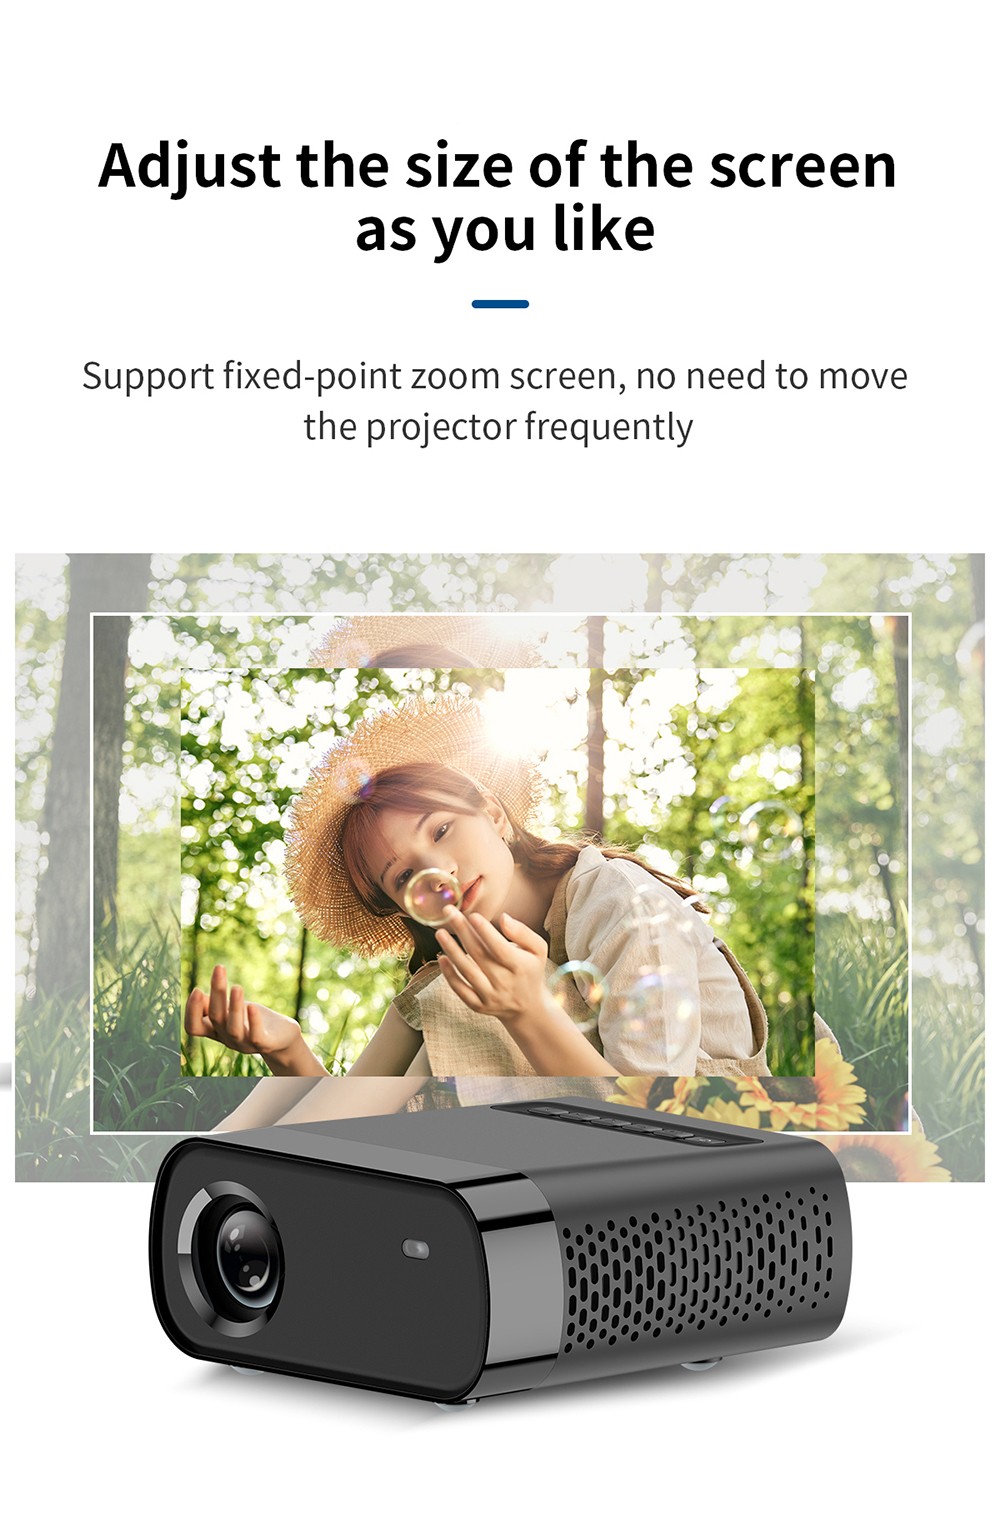 Foqucy GX100 1080P Proiettore LED 1800Lumen 2000:1 Rapporto di contrasto Home Media Player